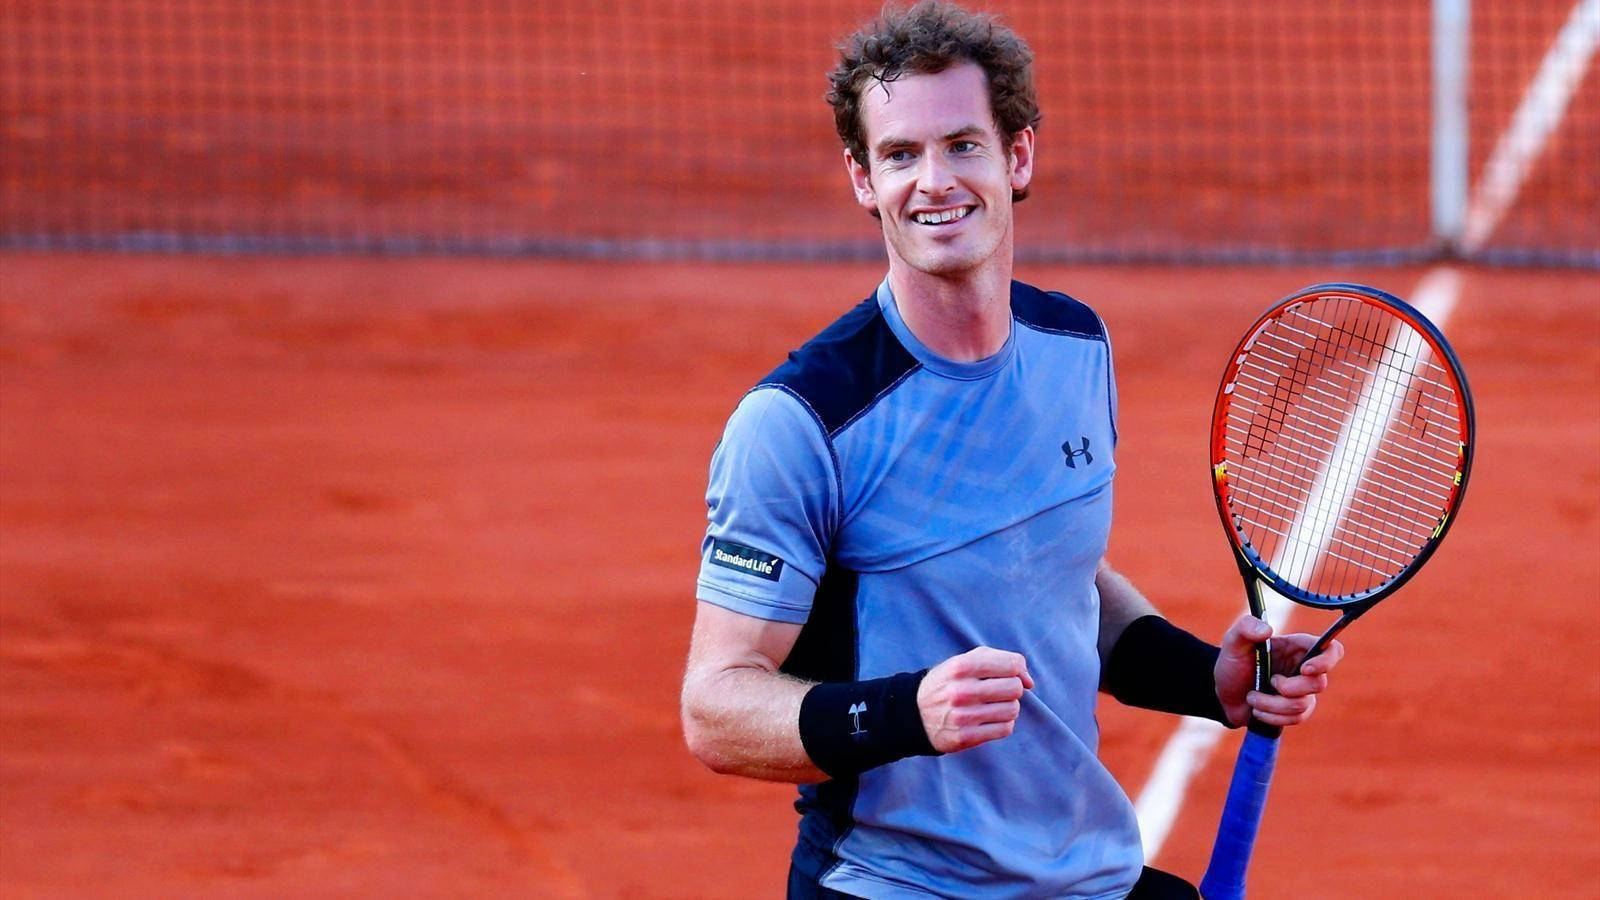 Sorrisoda Campione - Andy Murray Con La Sua Racchetta Da Tennis Sfondo